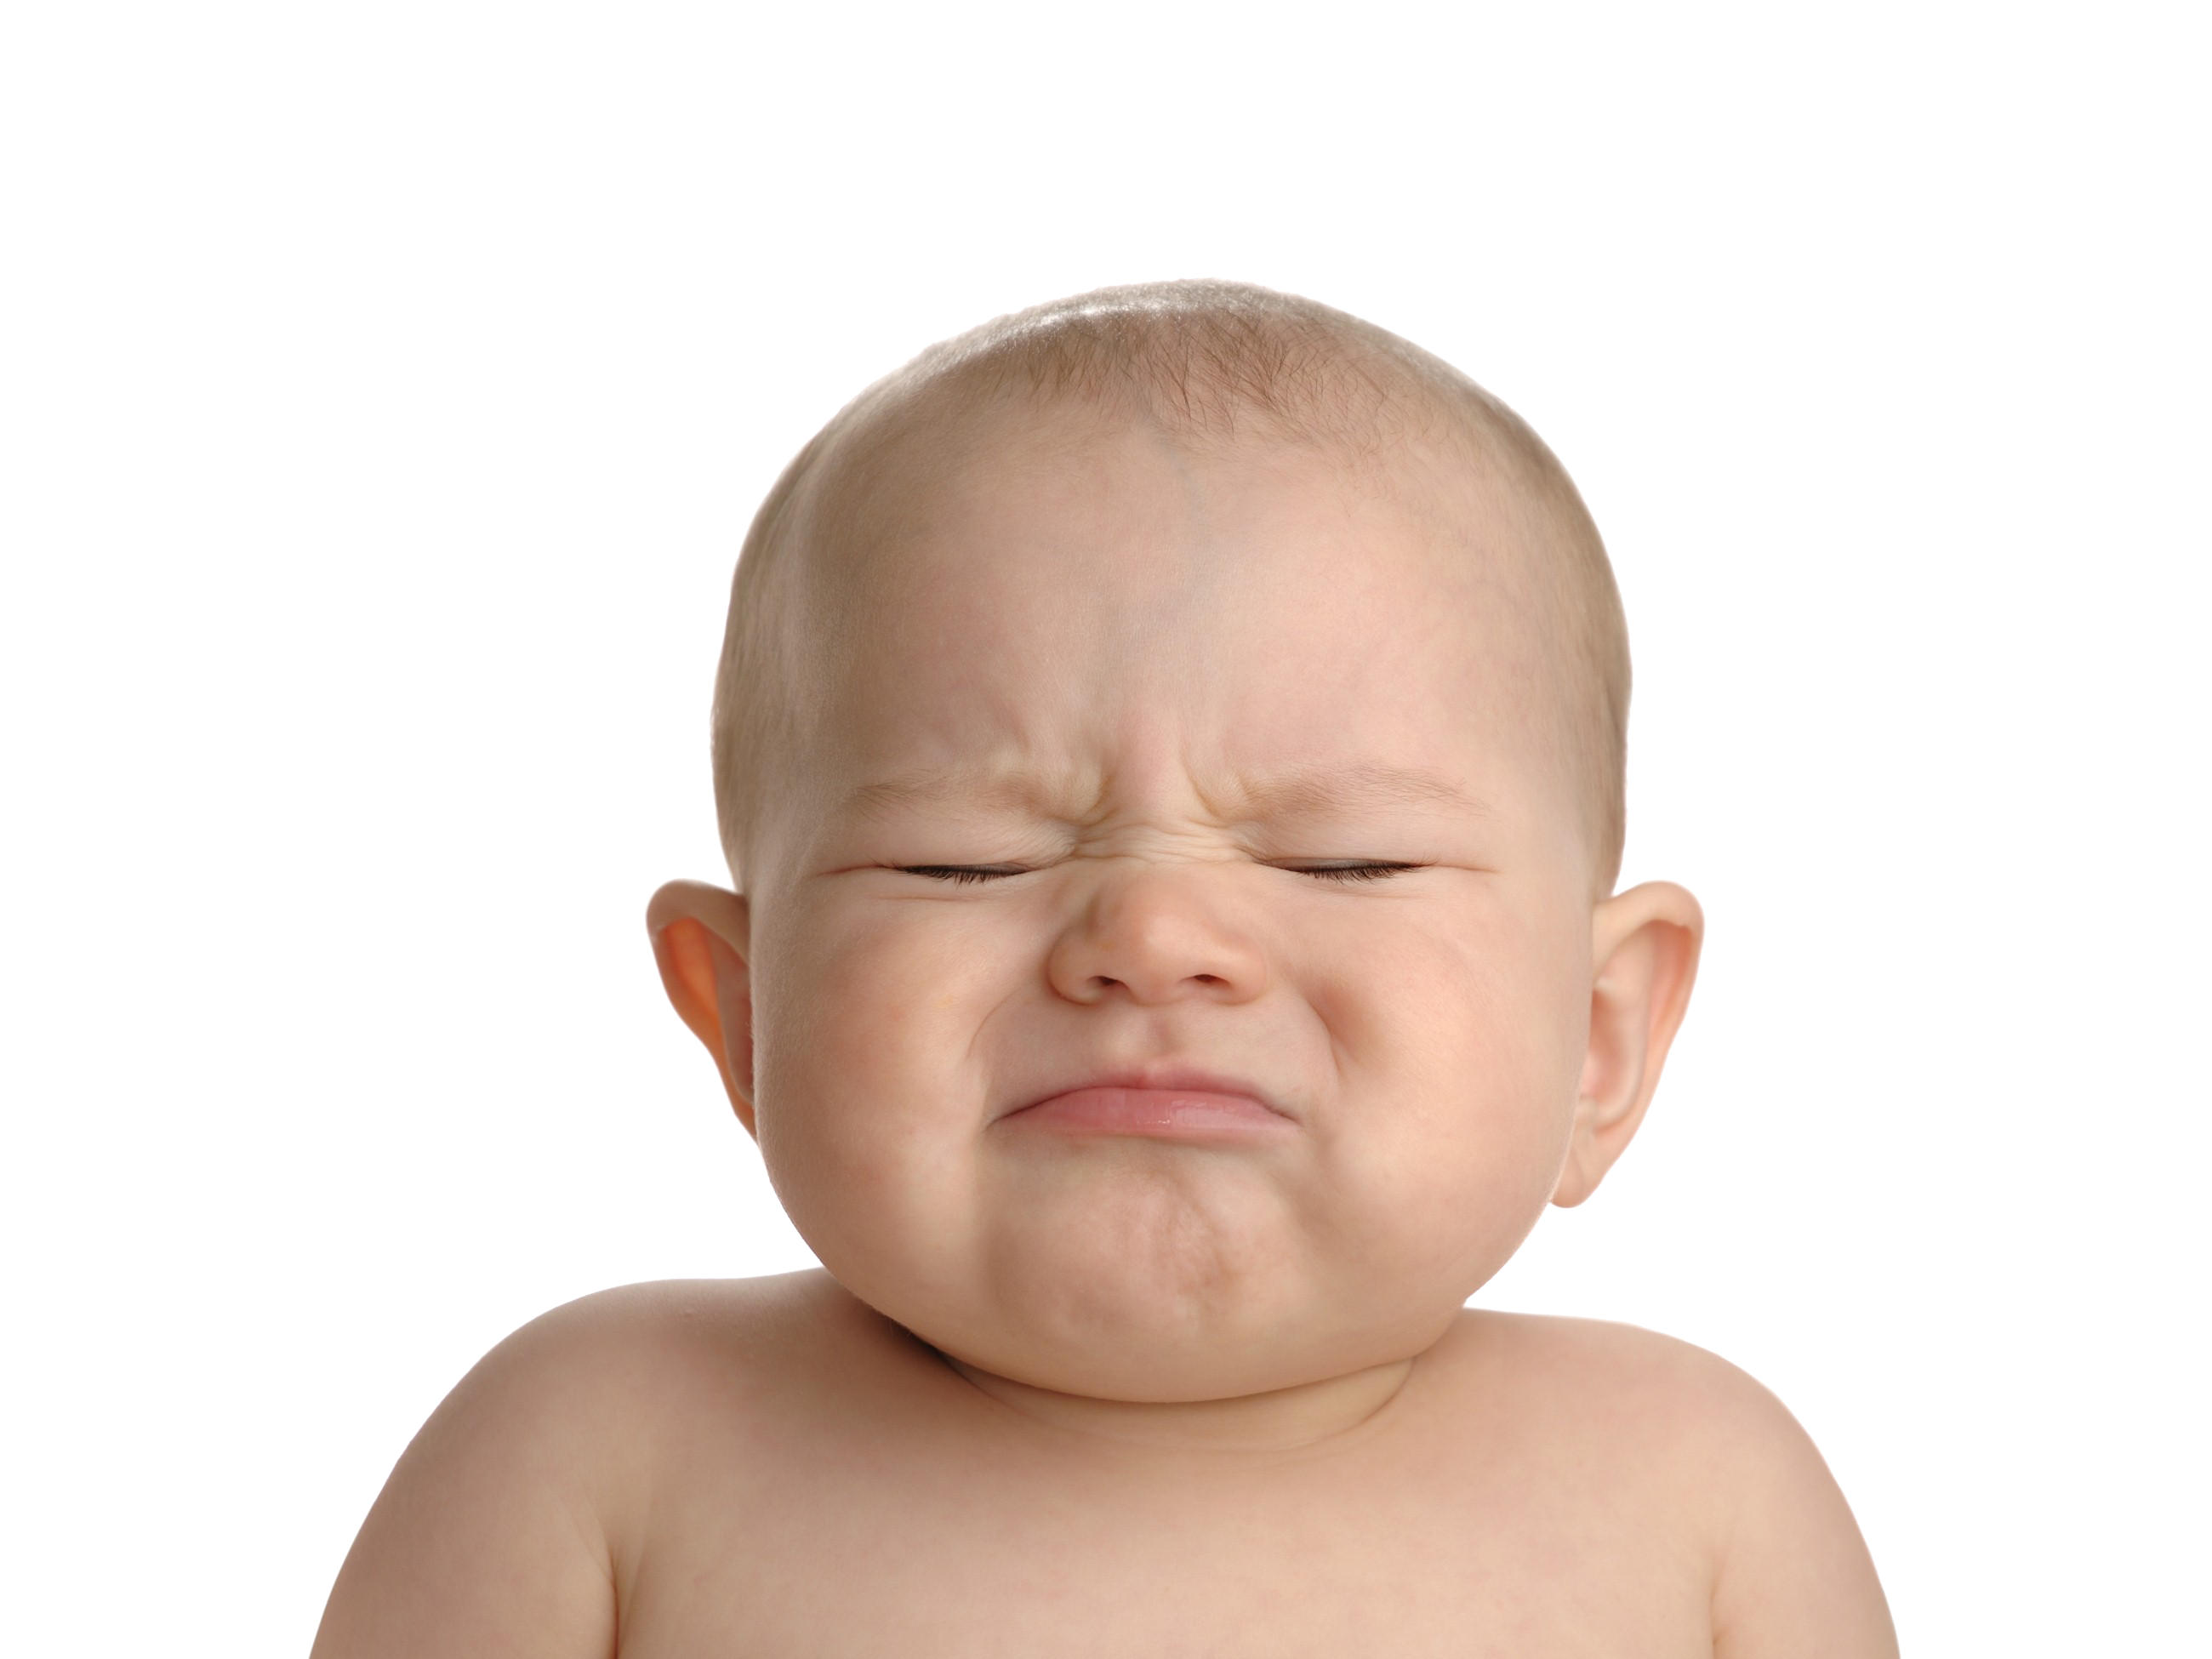 Bayi menangis Gambar PNG dengan latar belakang Transparan